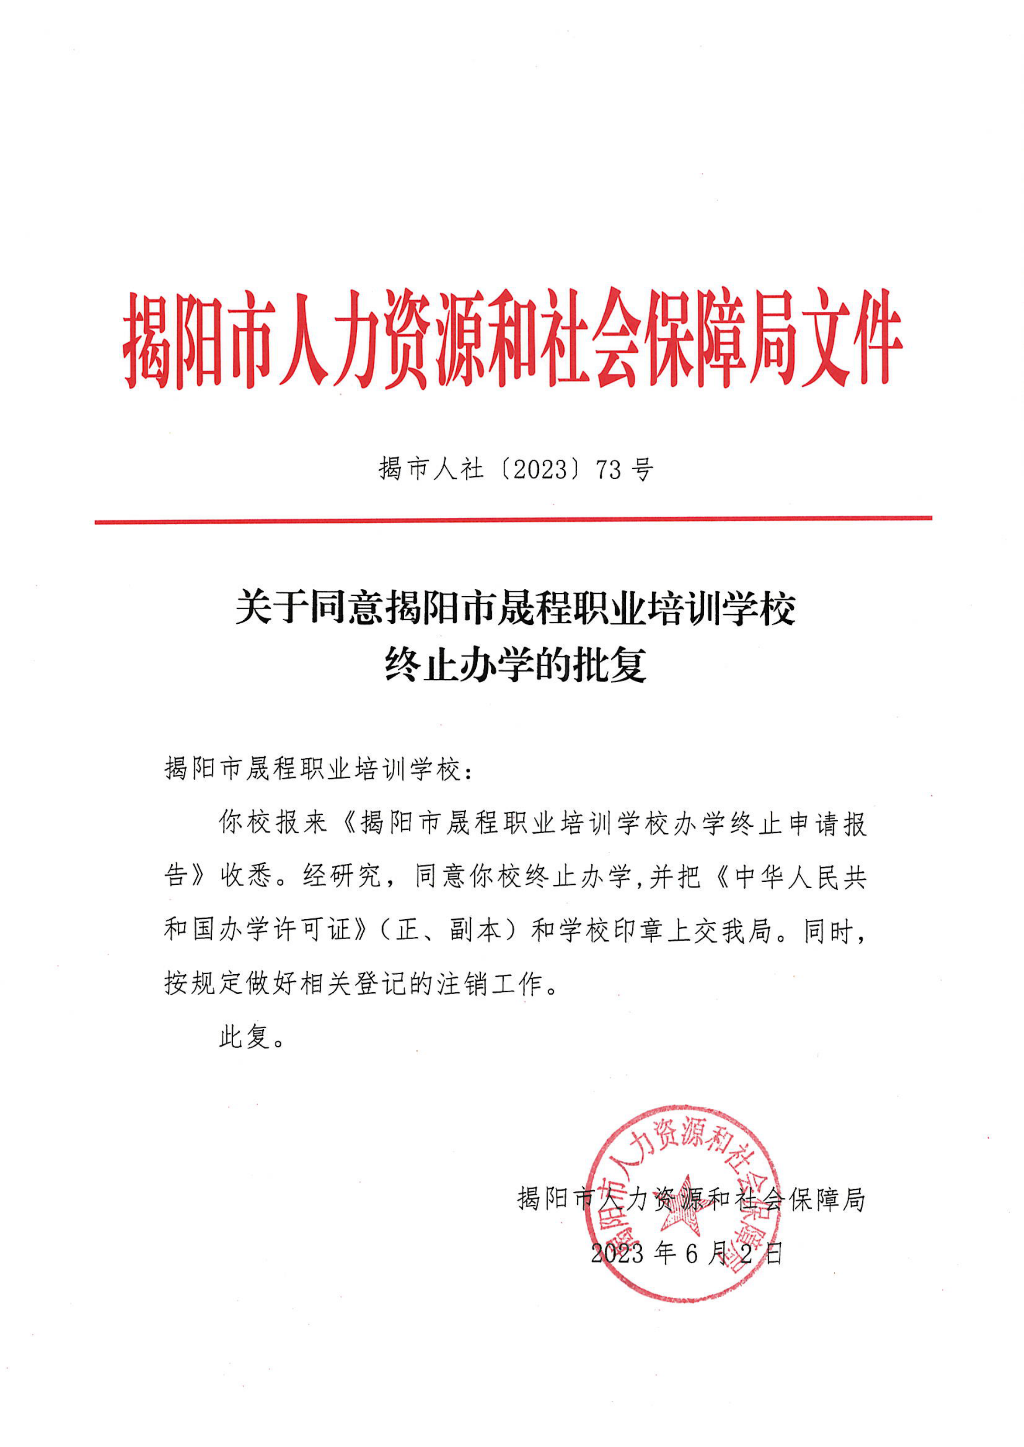 关于同意揭阳市晟程职业培训学校终止办学的批复_00.png